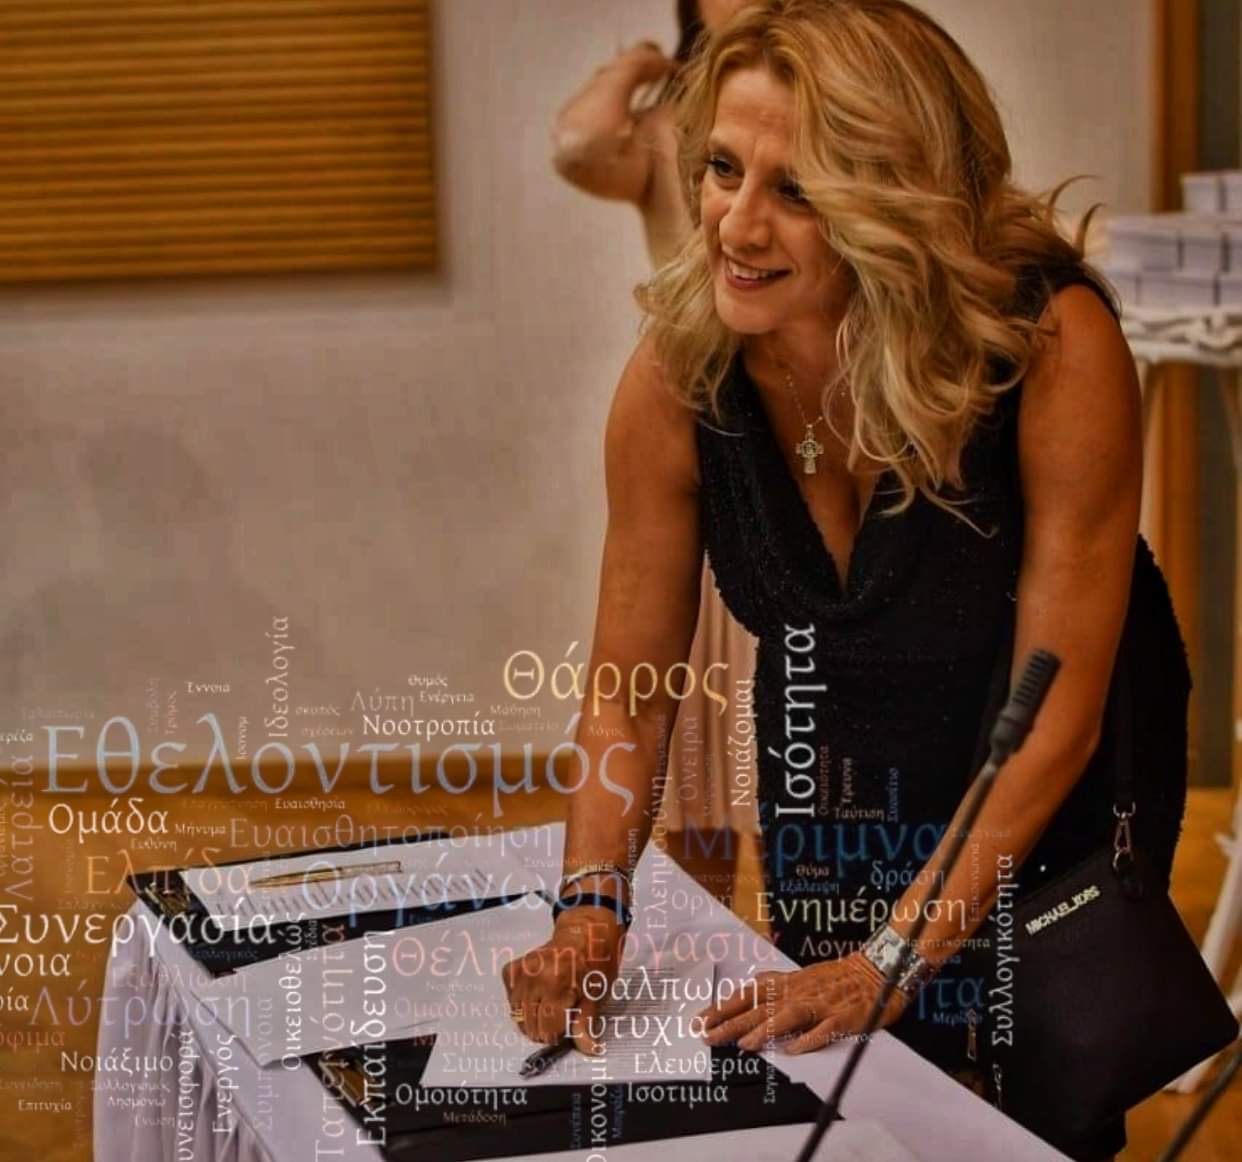 Σοφία Χονδρογιάννη: Την Κυριακή 7/11 η συνάντηση με τους εθελοντές στο Αμφιθέατρο της Περιφέρειας στην Χαλκίδα